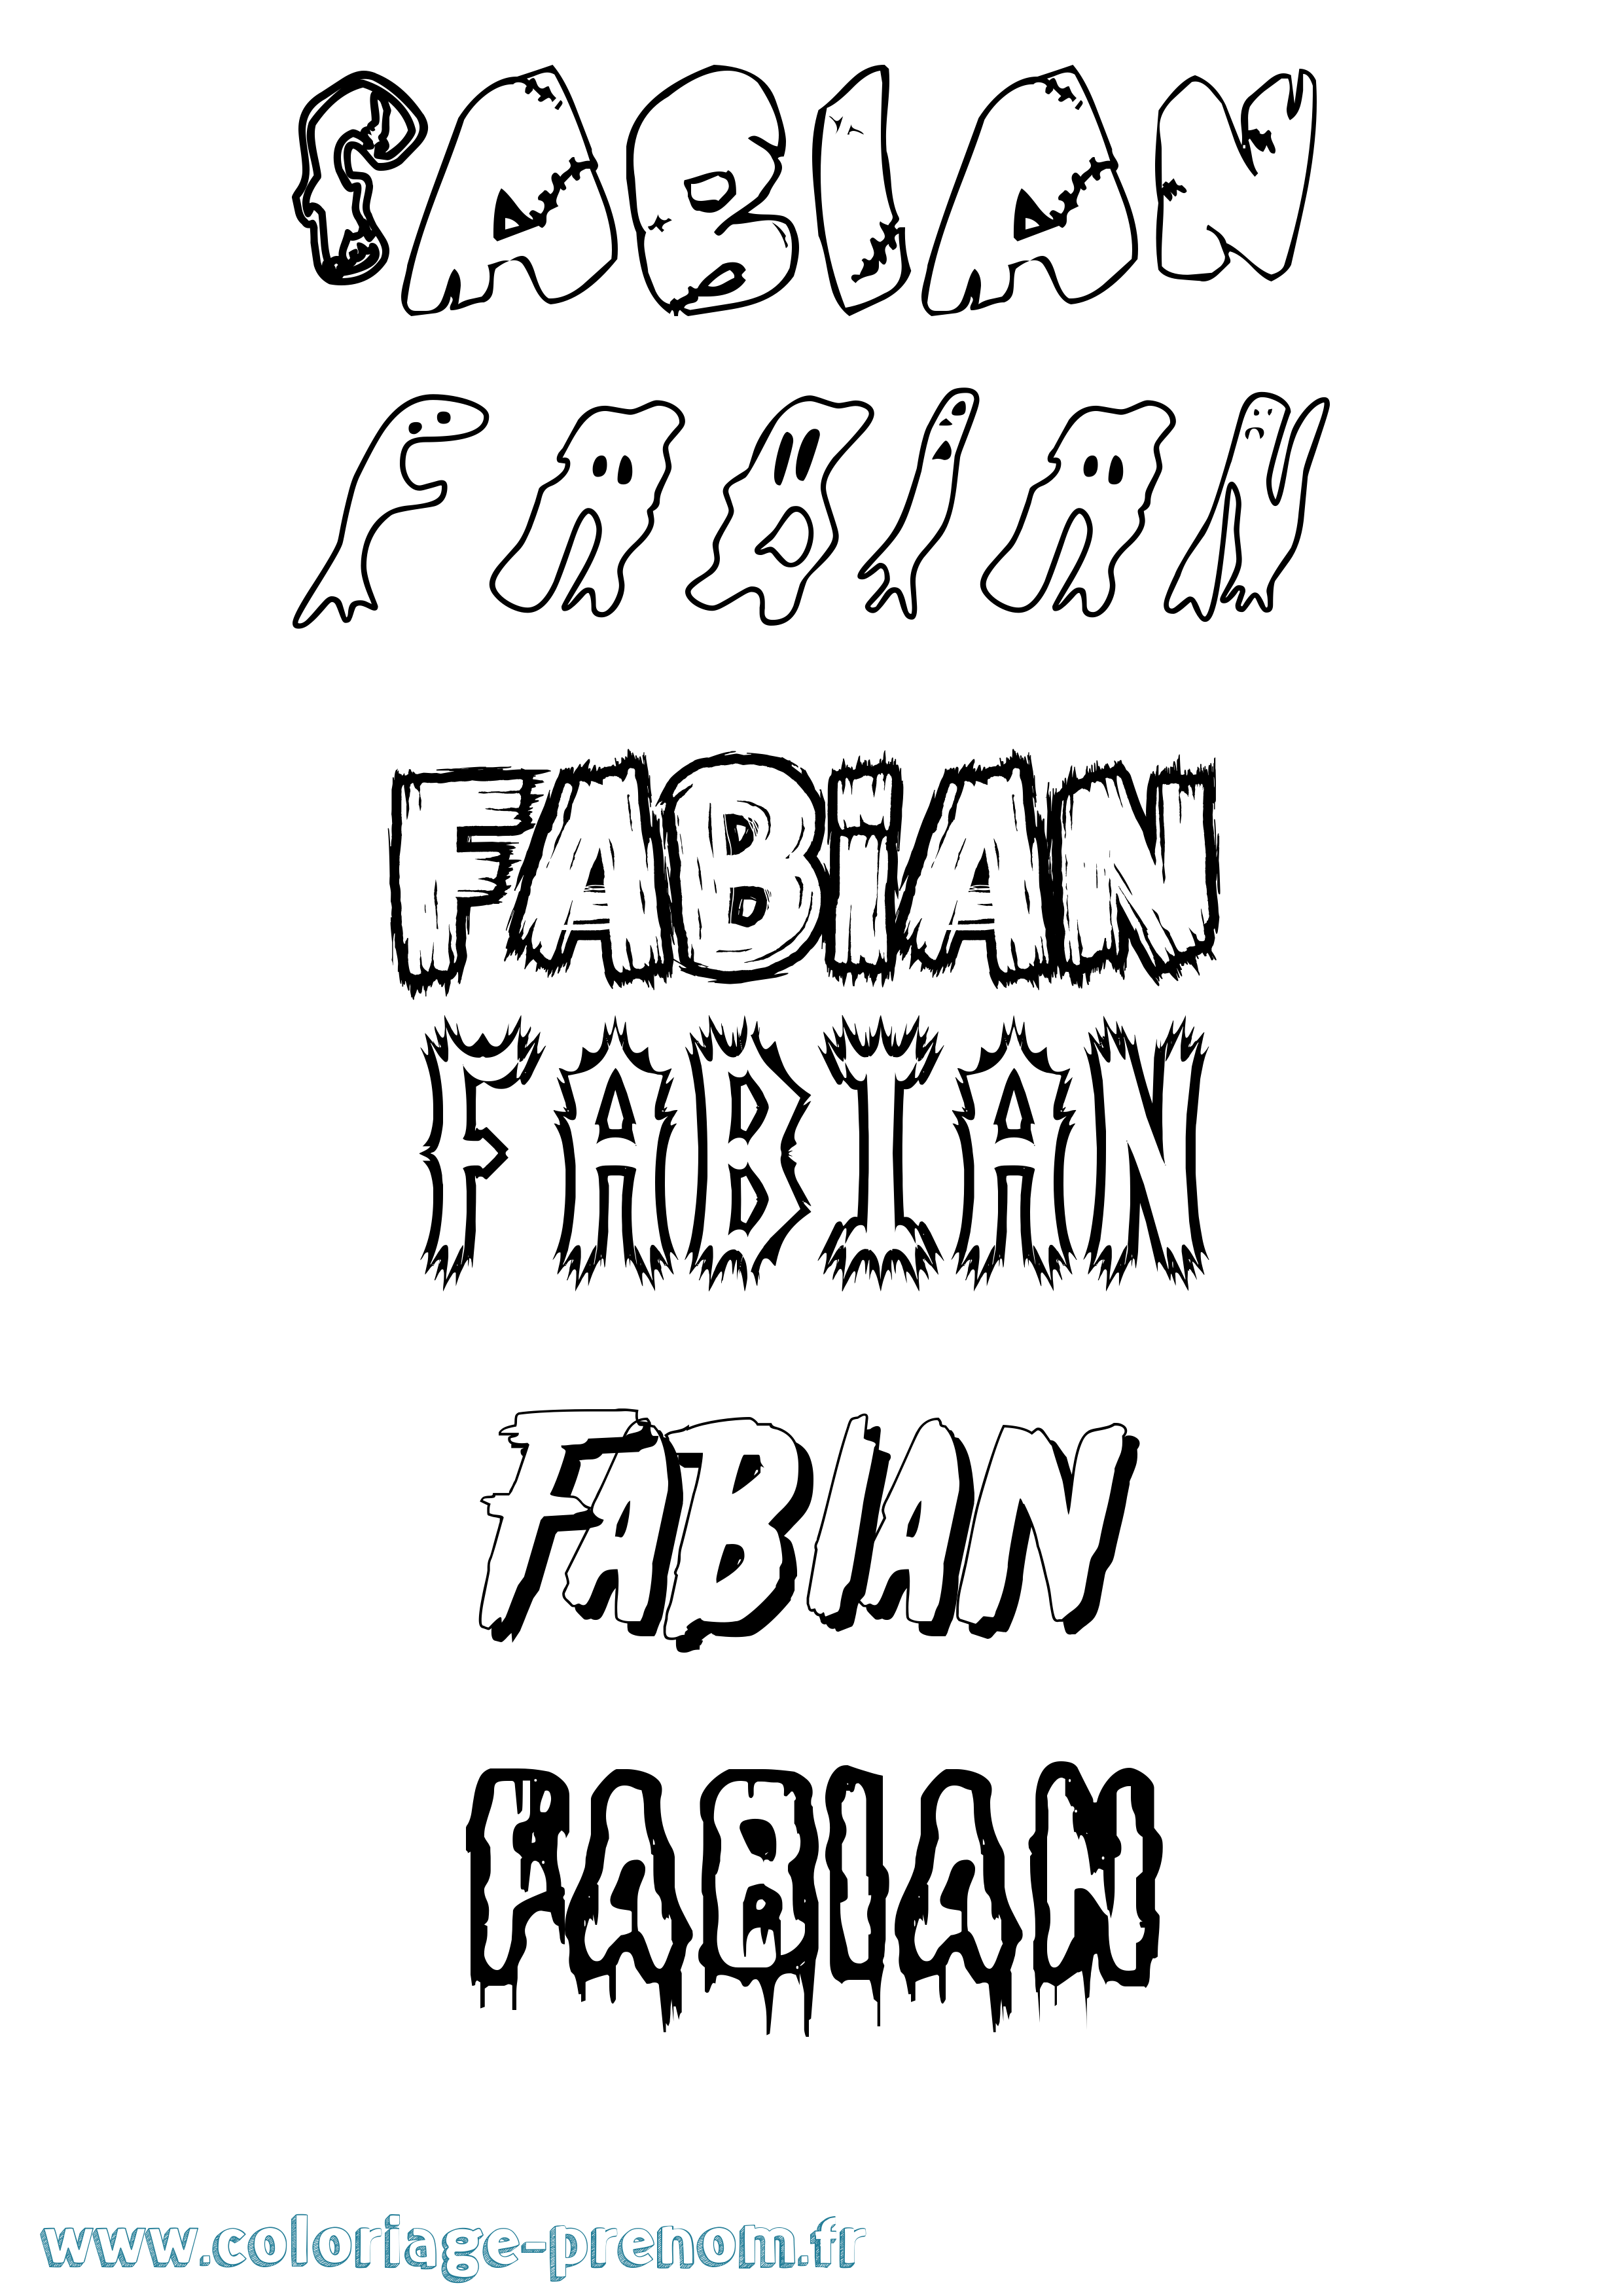 Coloriage prénom Fabian Frisson